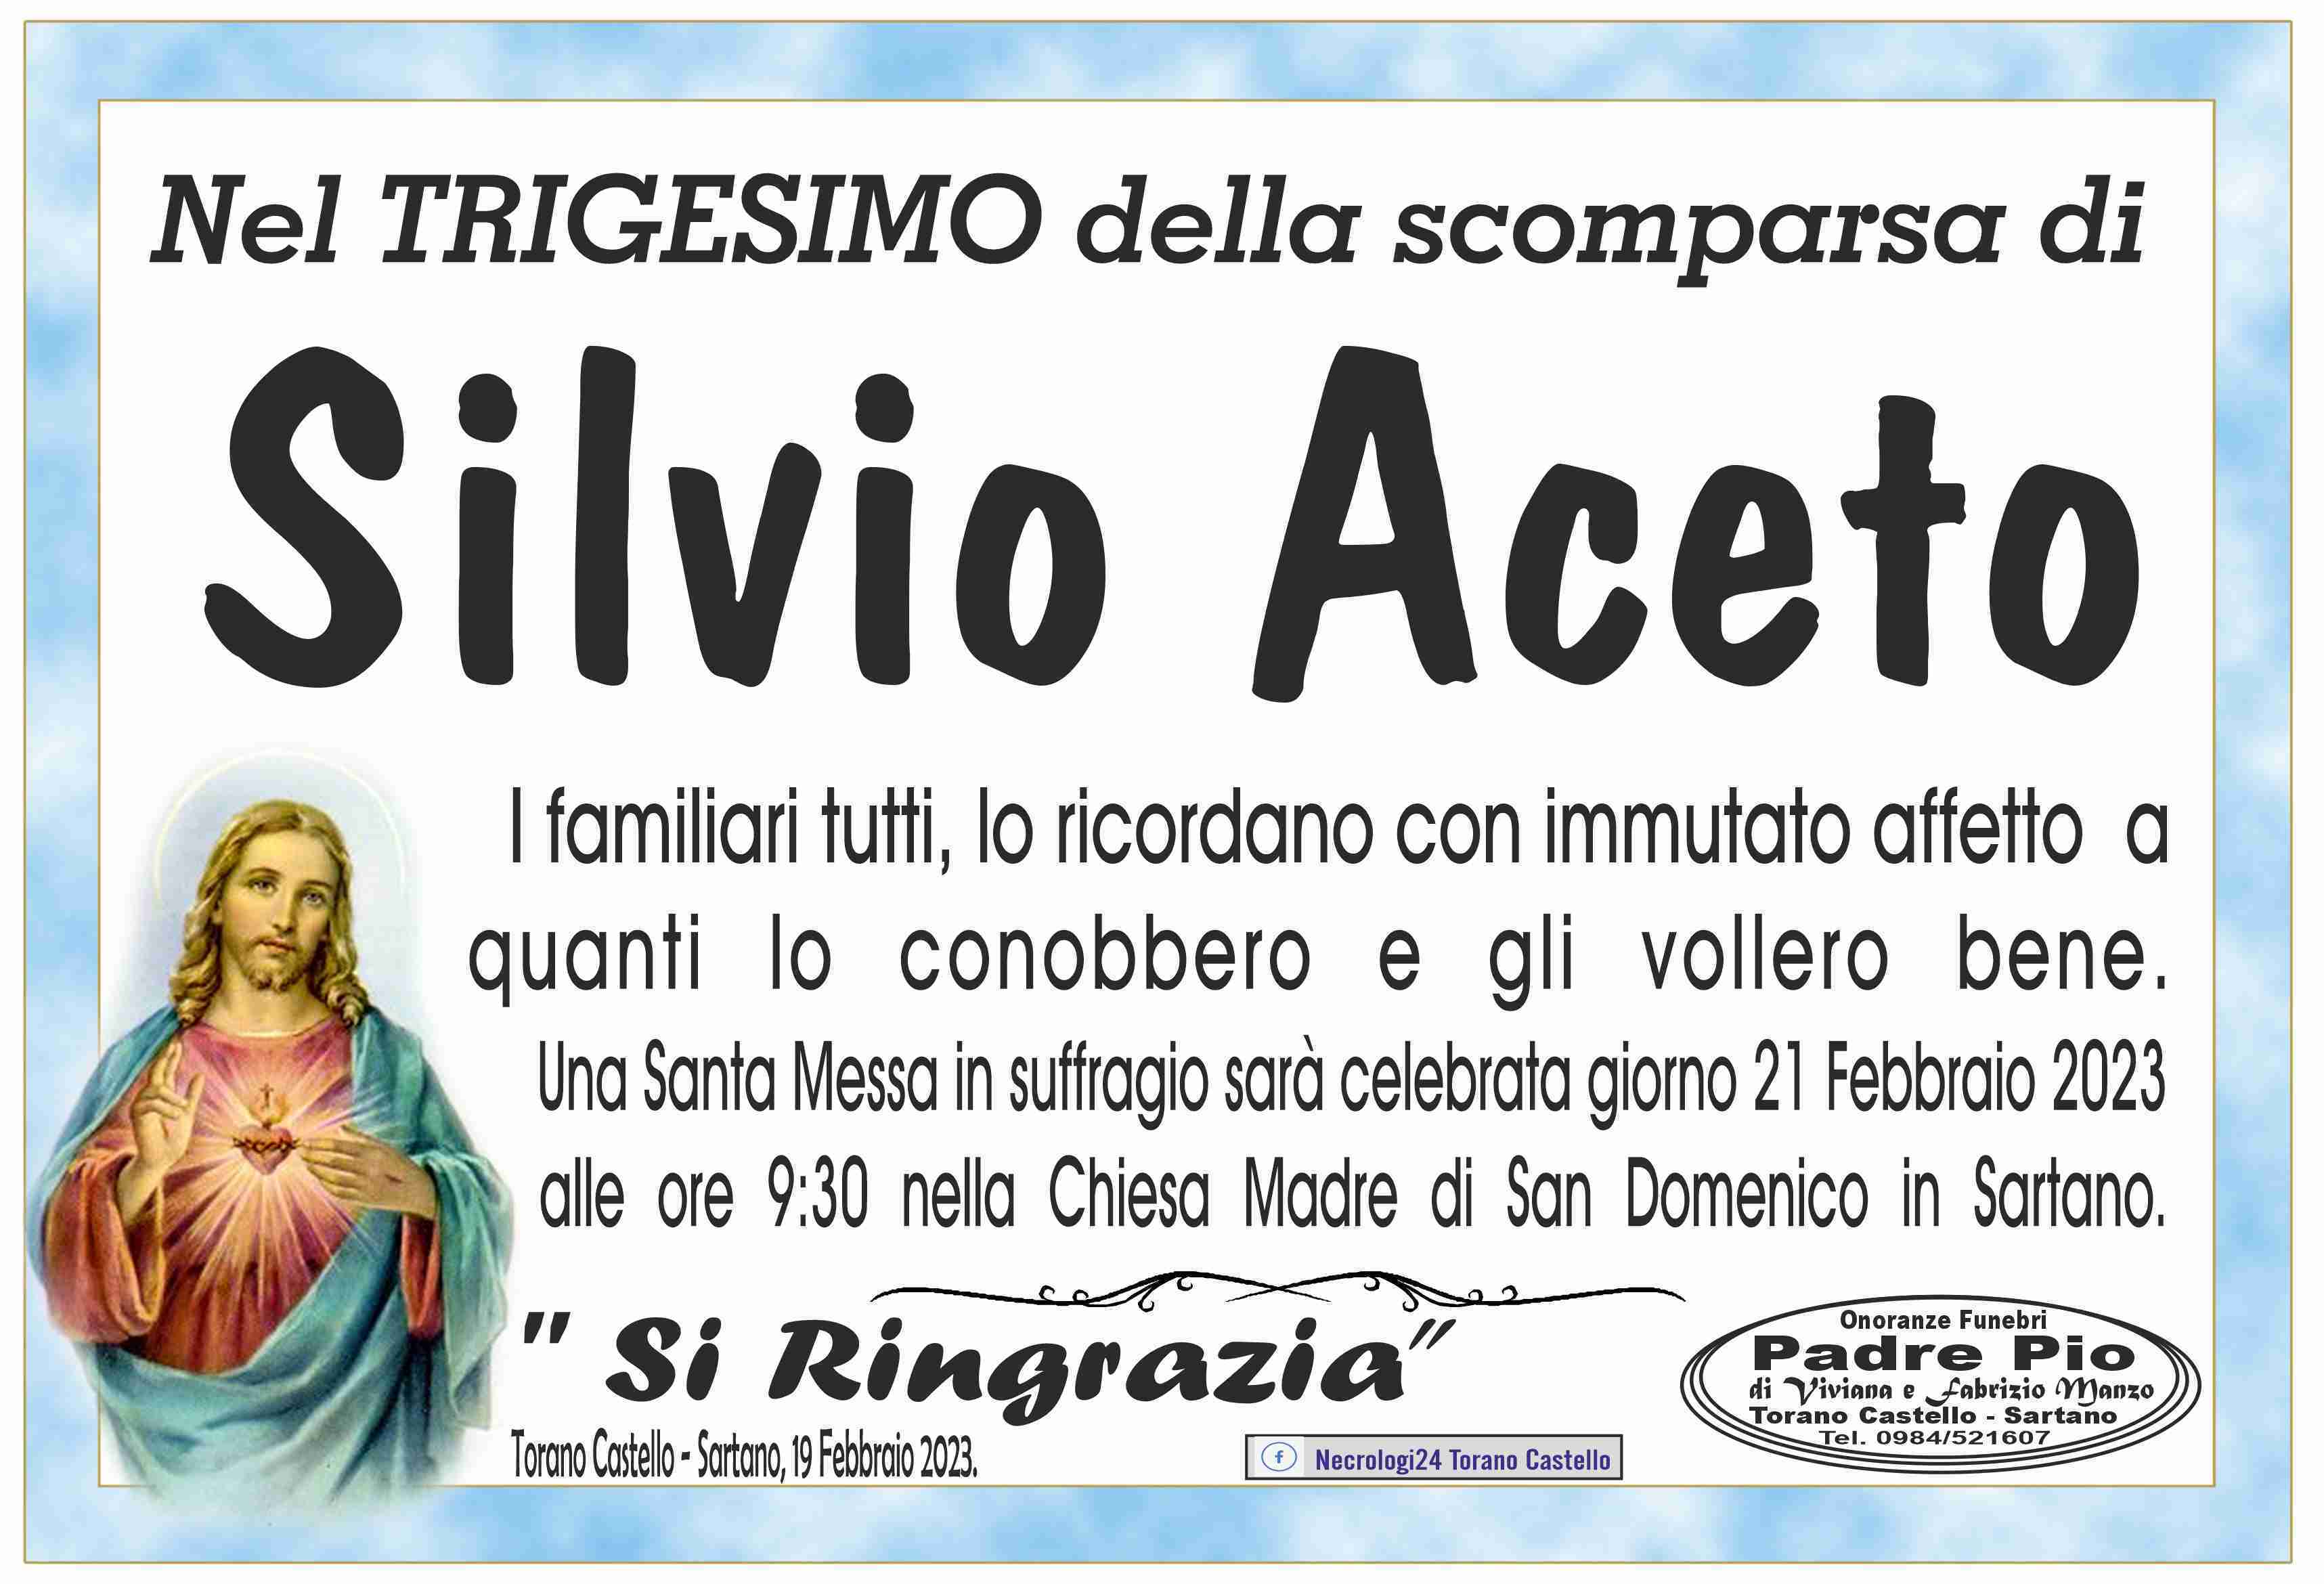 Silvio Aceto